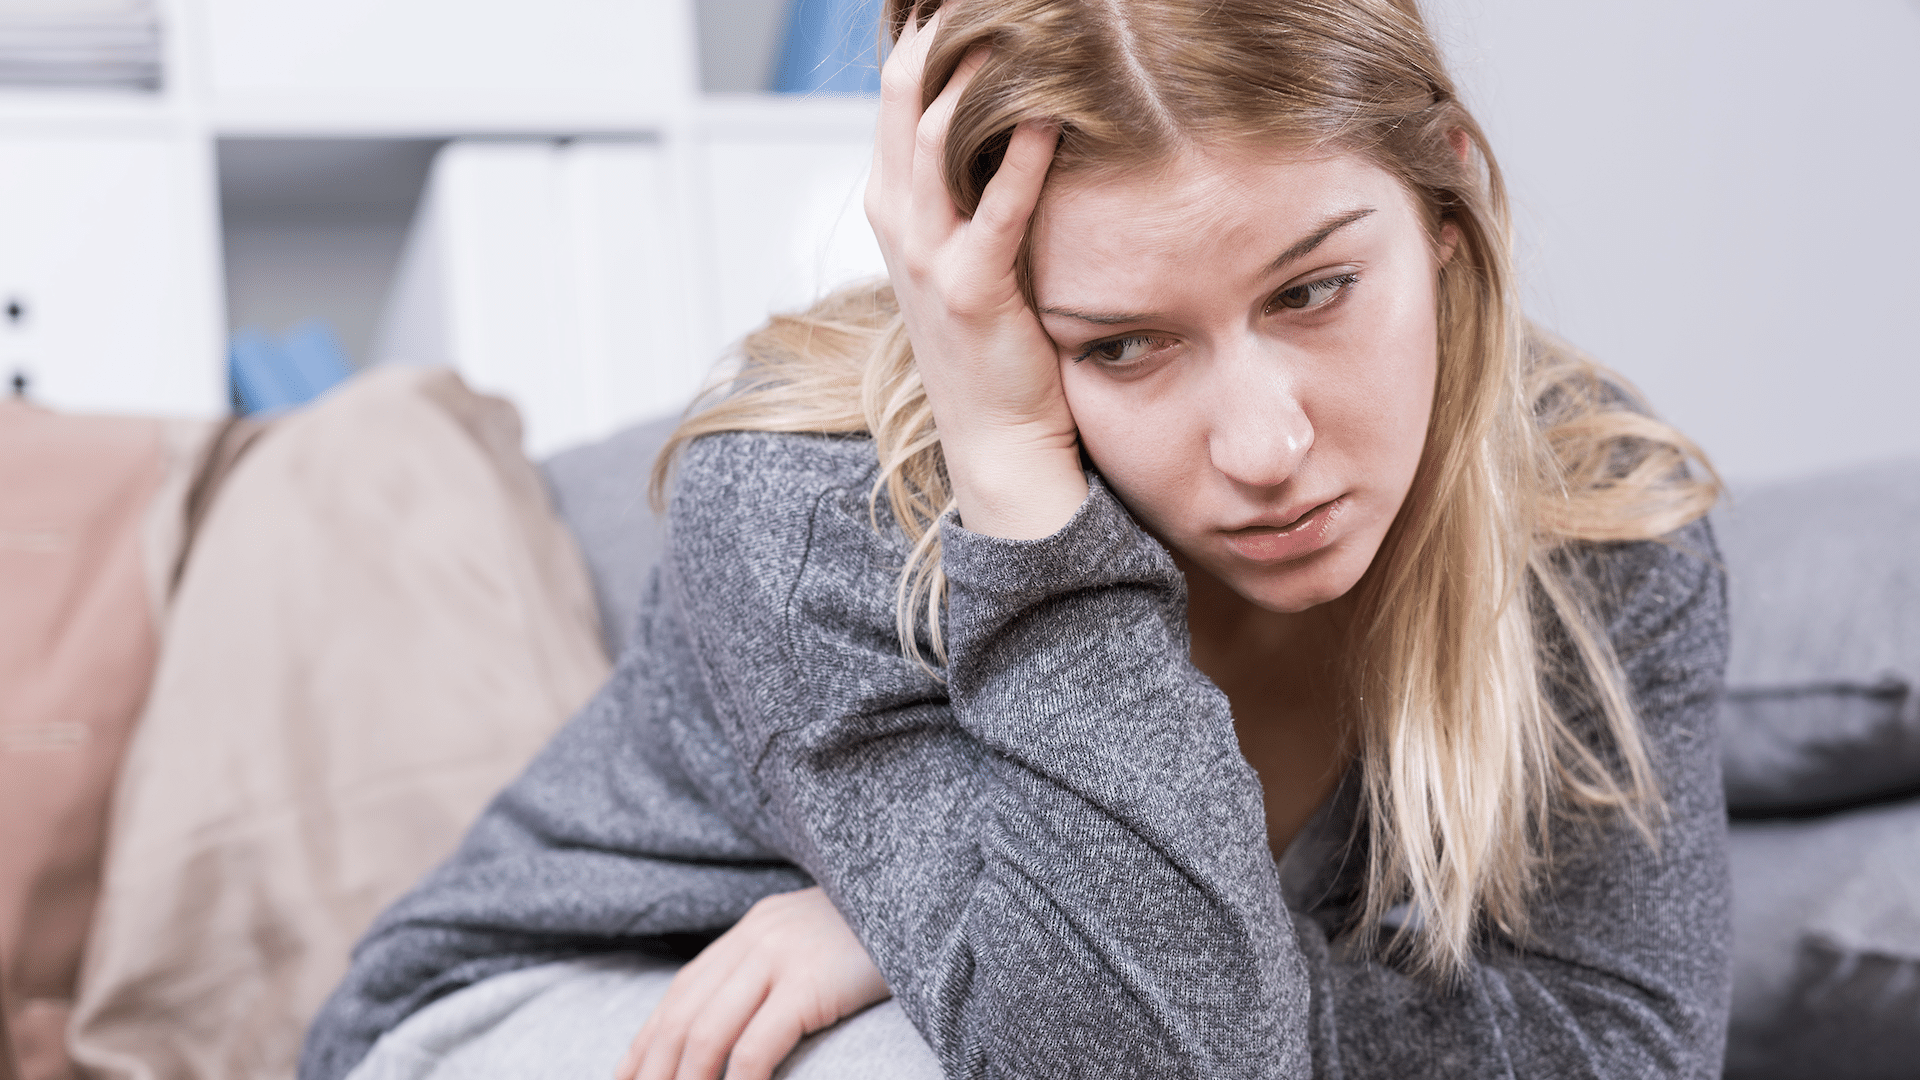 a woman experiences caregiver burnout